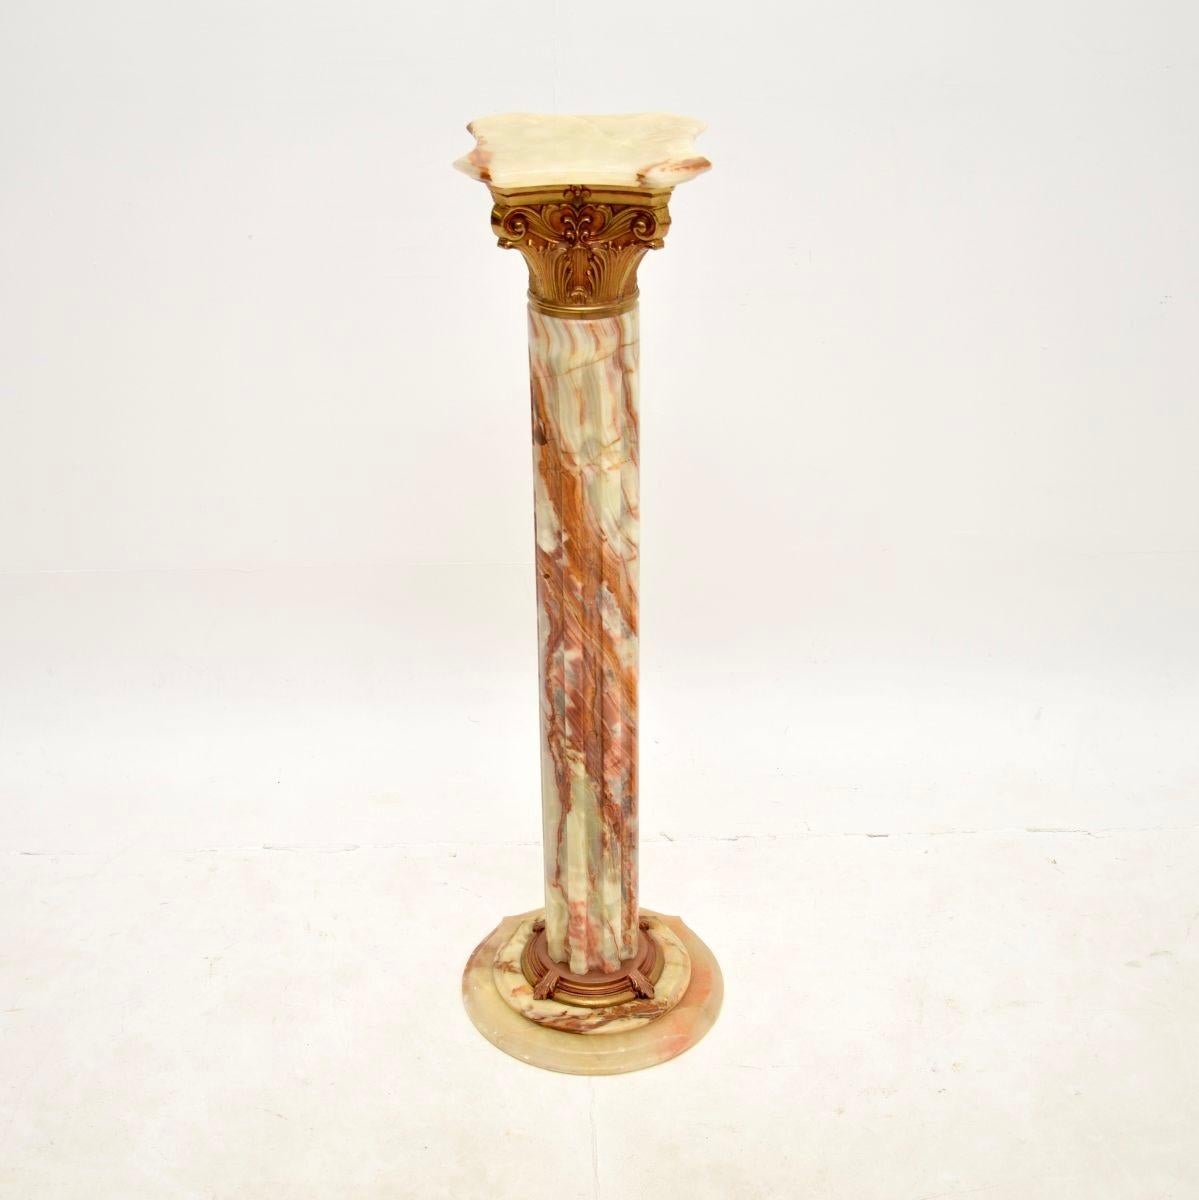 Superbe colonne corinthienne antique en onyx et métal doré. Probablement fabriqué en Italie, il date des années 1930.

Il est d'une superbe qualité, le design d'une colonne corinthienne néoclassique est très impressionnant et élégant. Il a des côtés